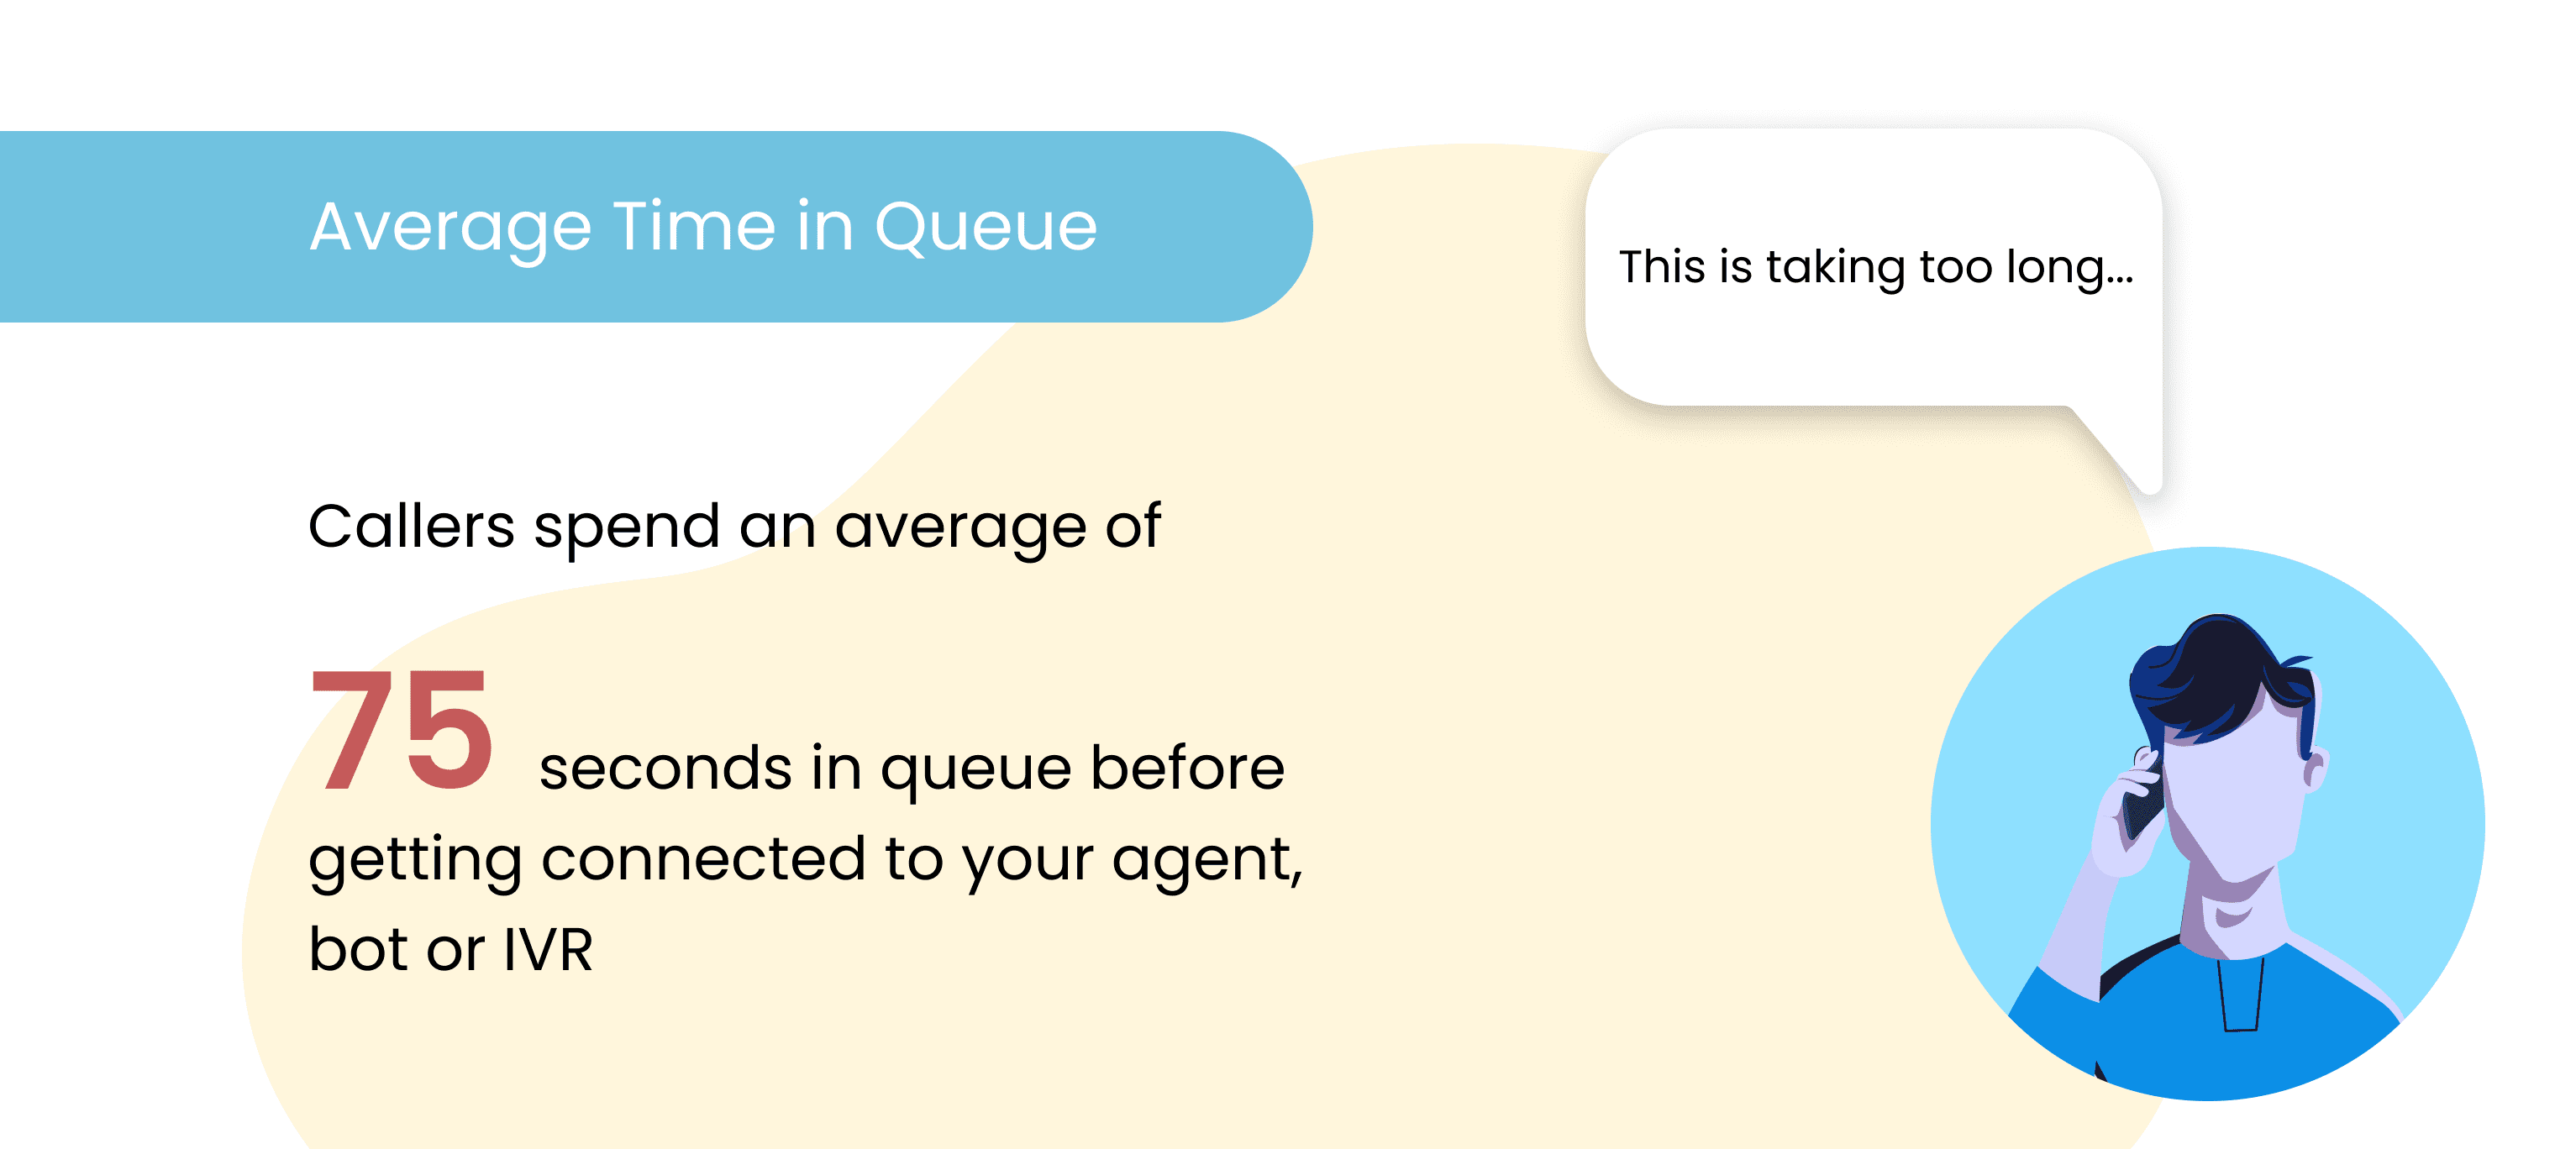 Average Time in Queue